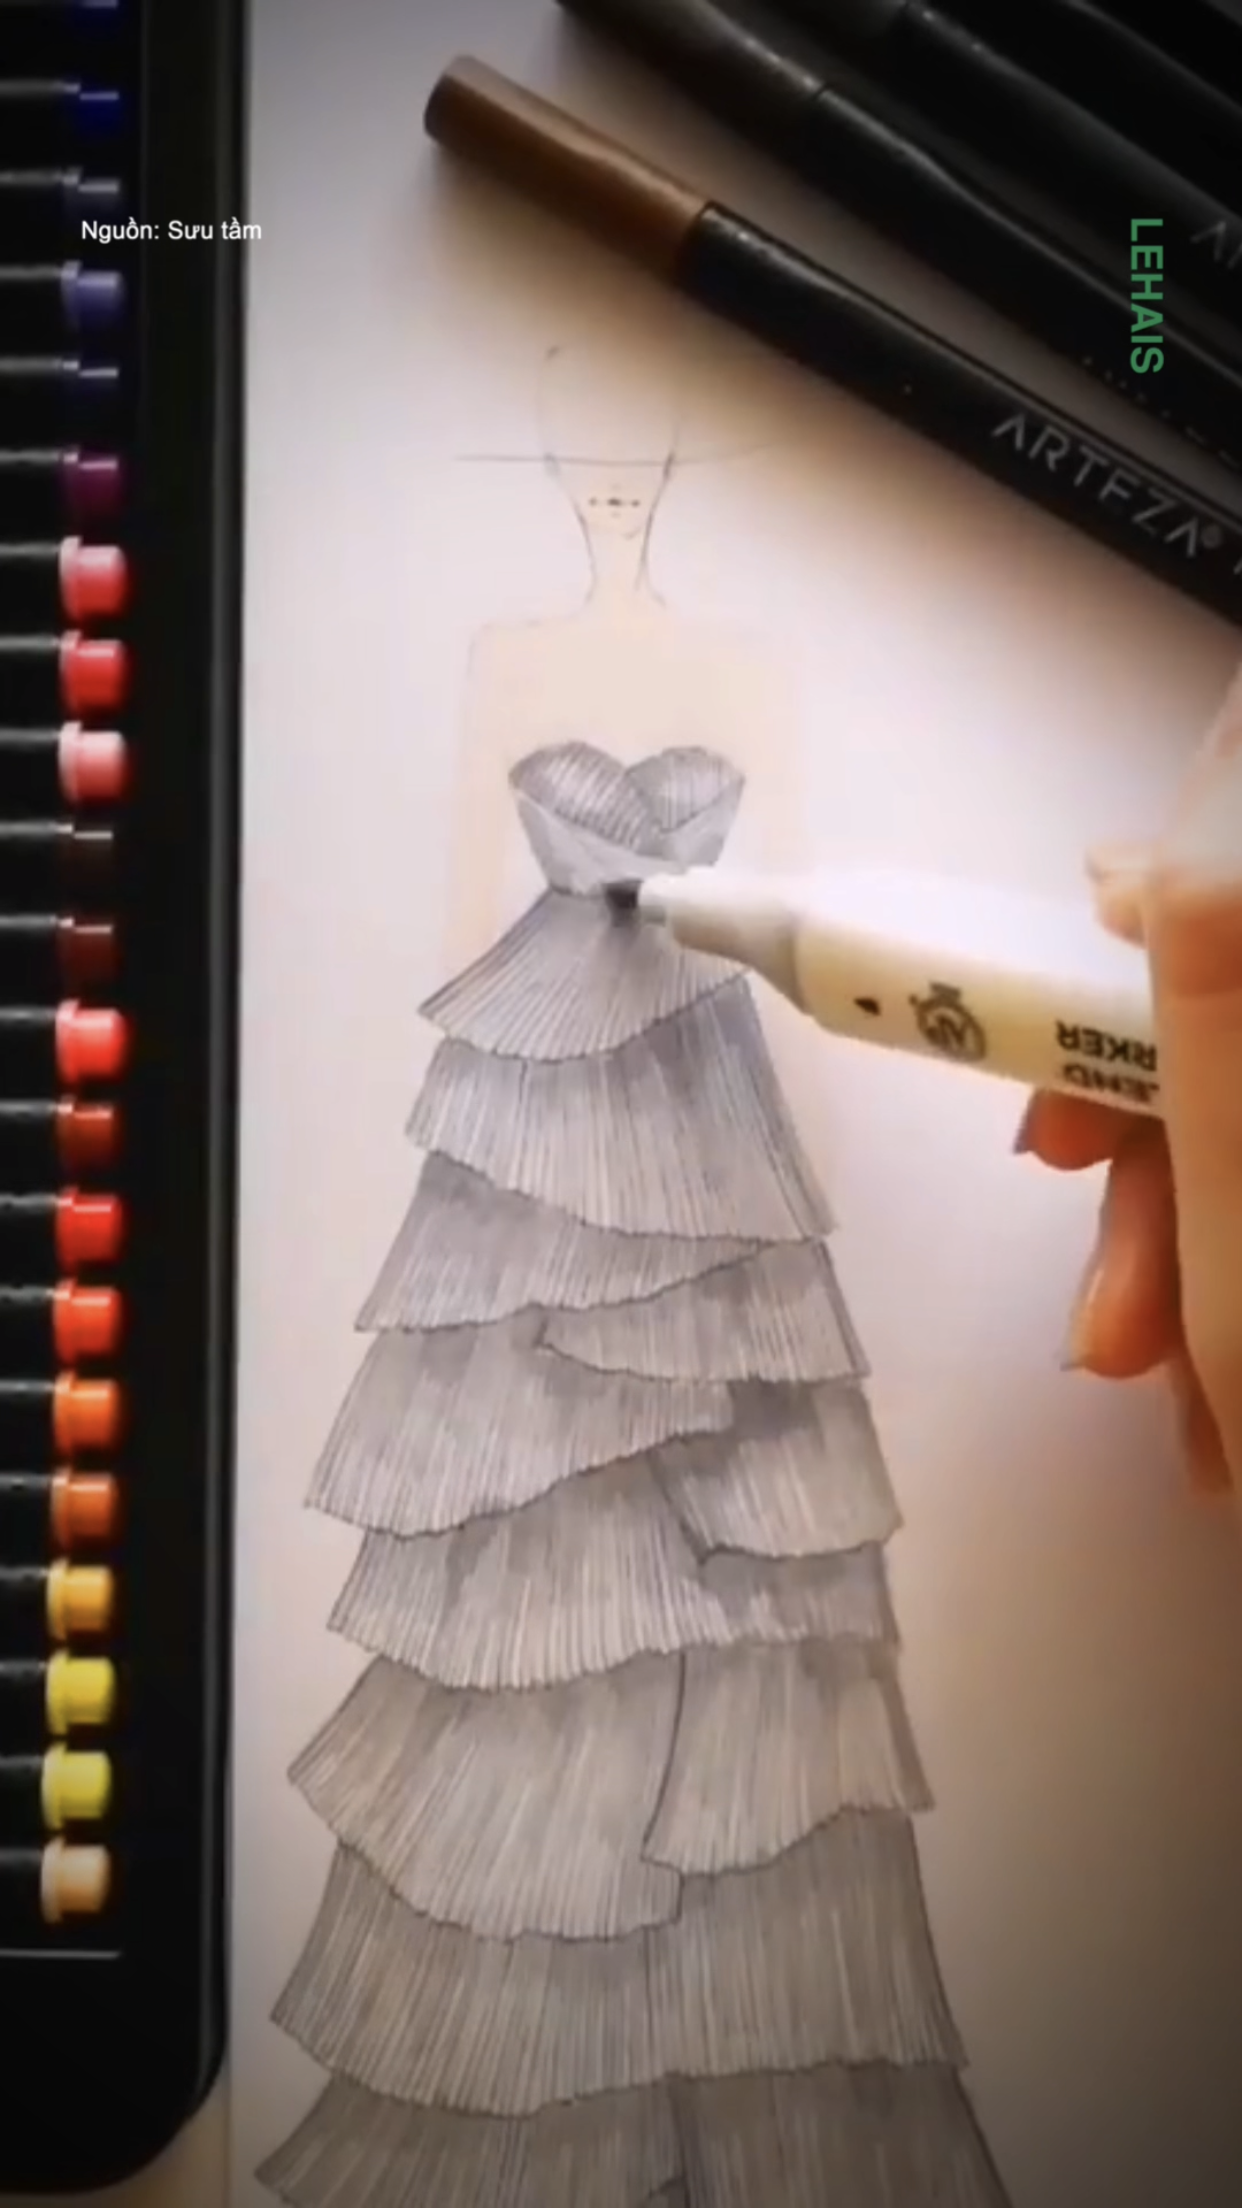 Vẽ thiết kế váy nhiều tầng cực đáng yêu